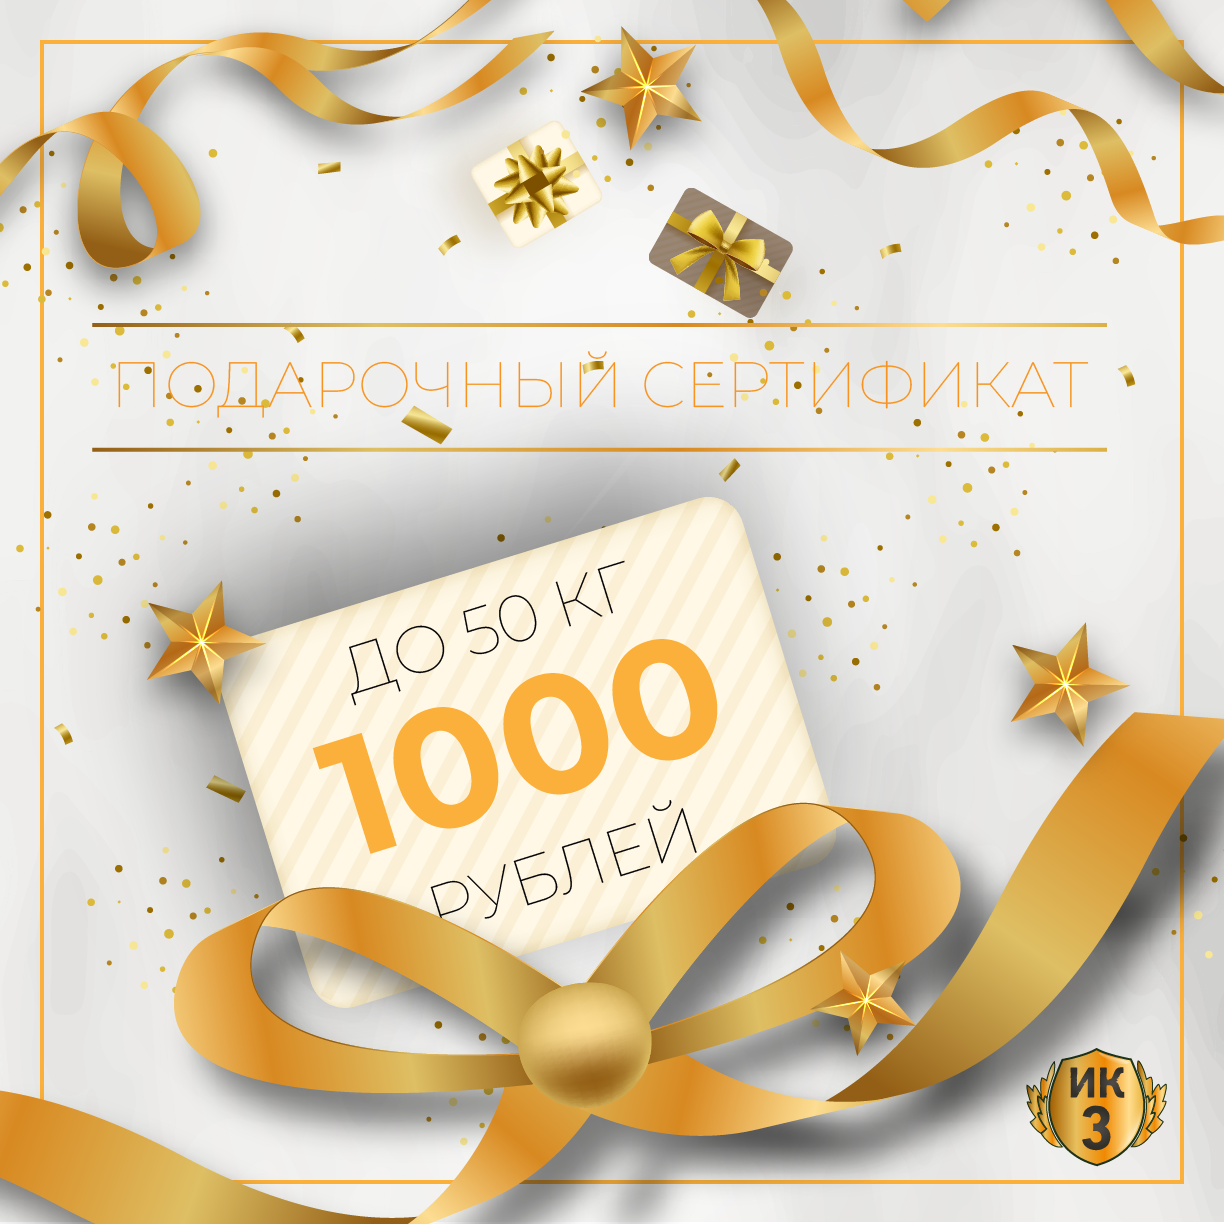 Подарочный сертификат 1000 руб. (50 кг.)